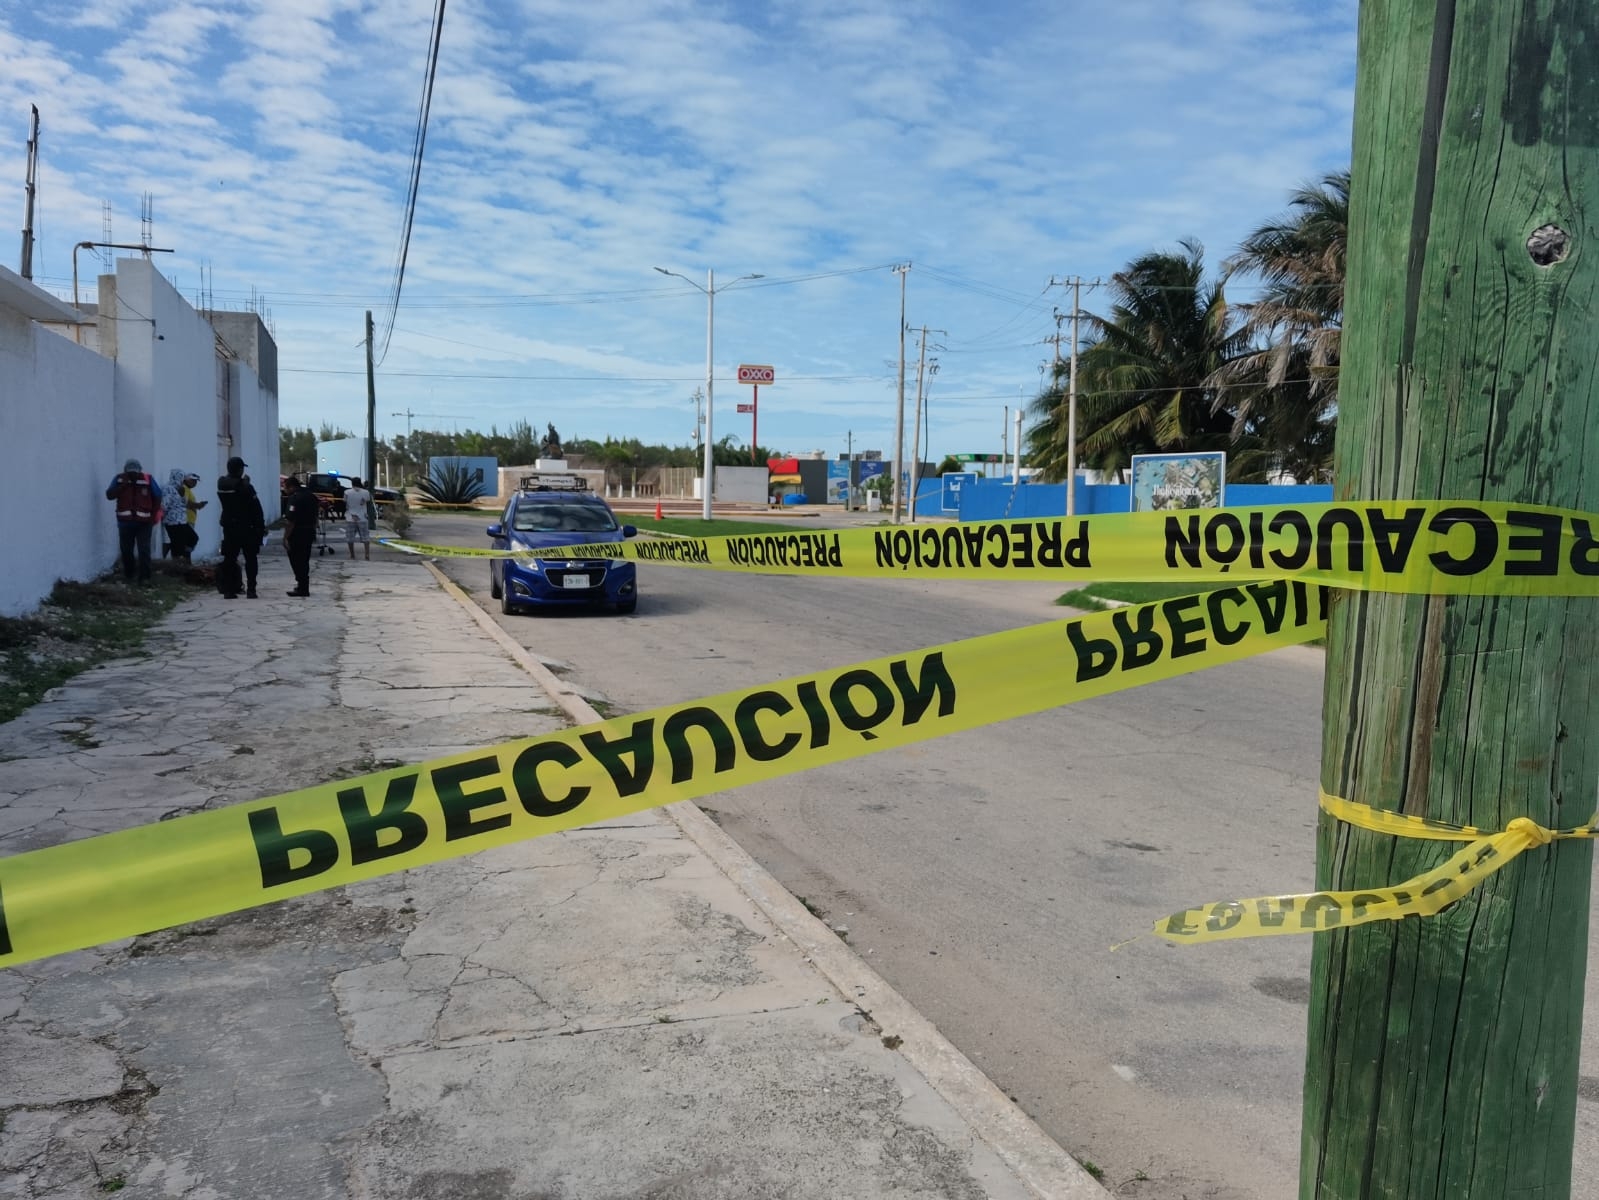 Operador de una grúa muere electrocutado en Progreso: VIDEO